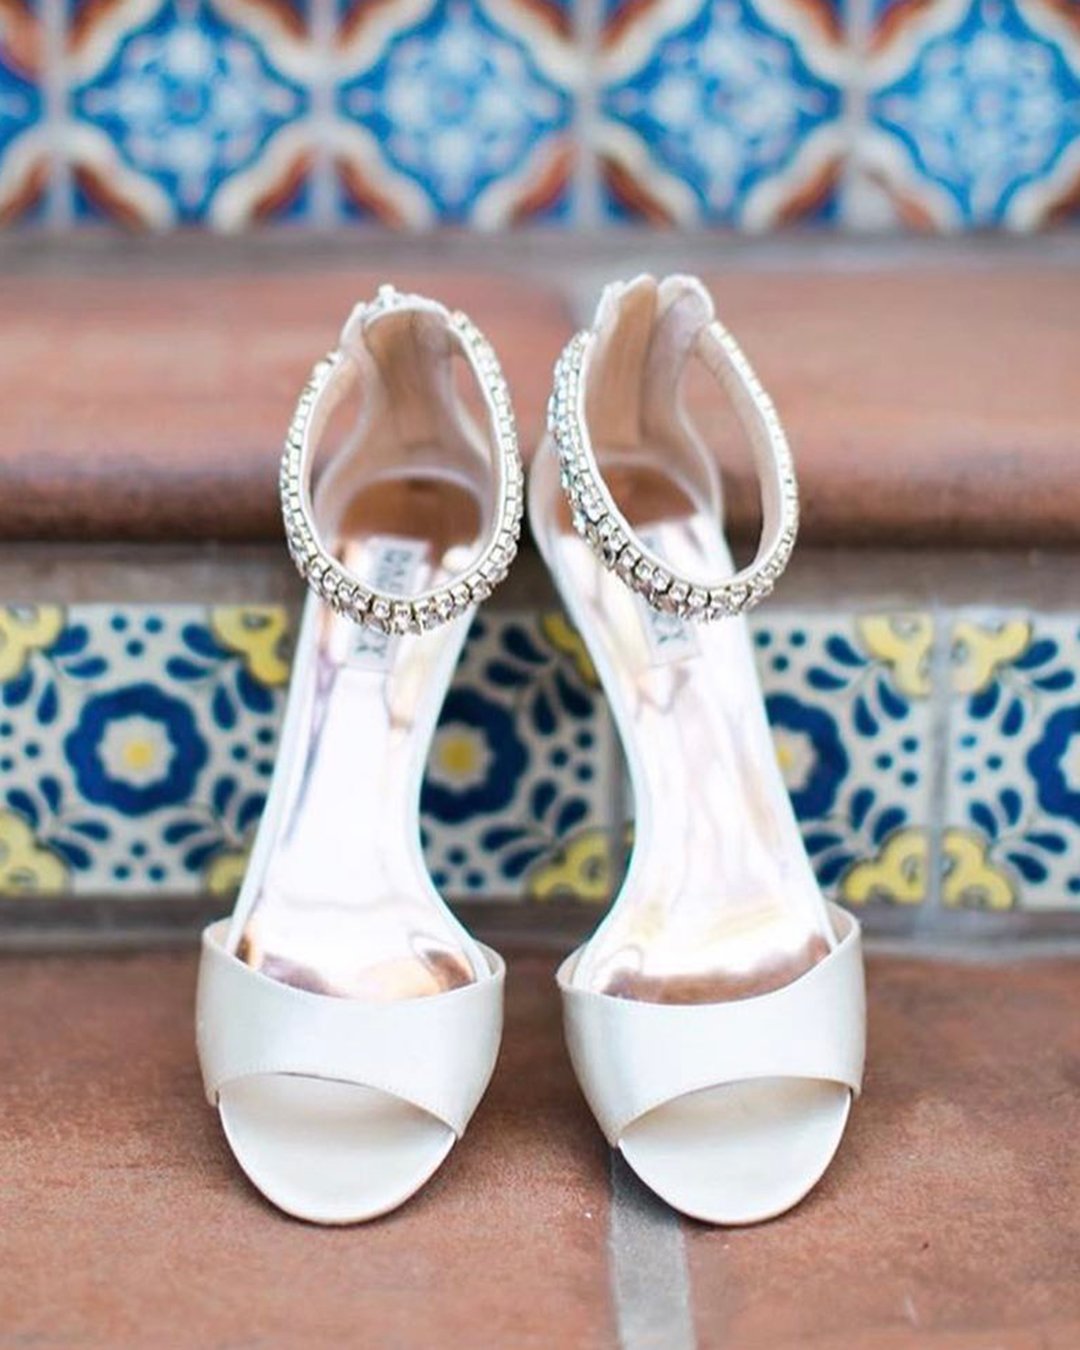 wedding sandals with stones white badgley mischka